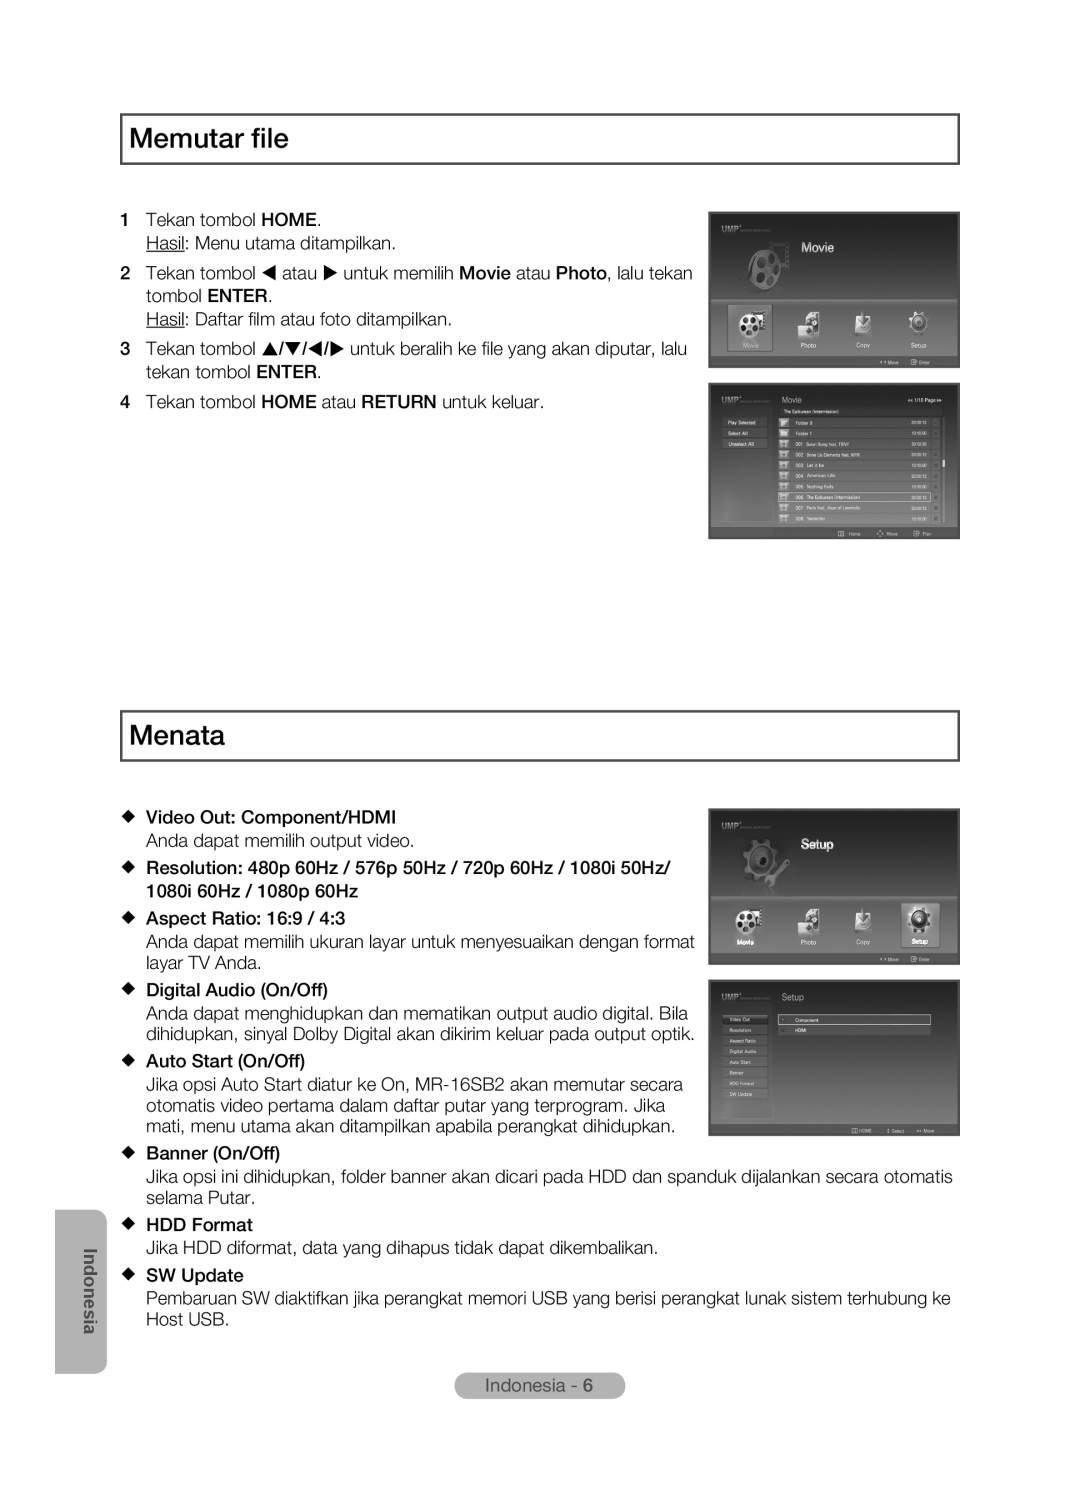 Samsung MR-16SB2 manual Memutar file, Menata, Indonesia 